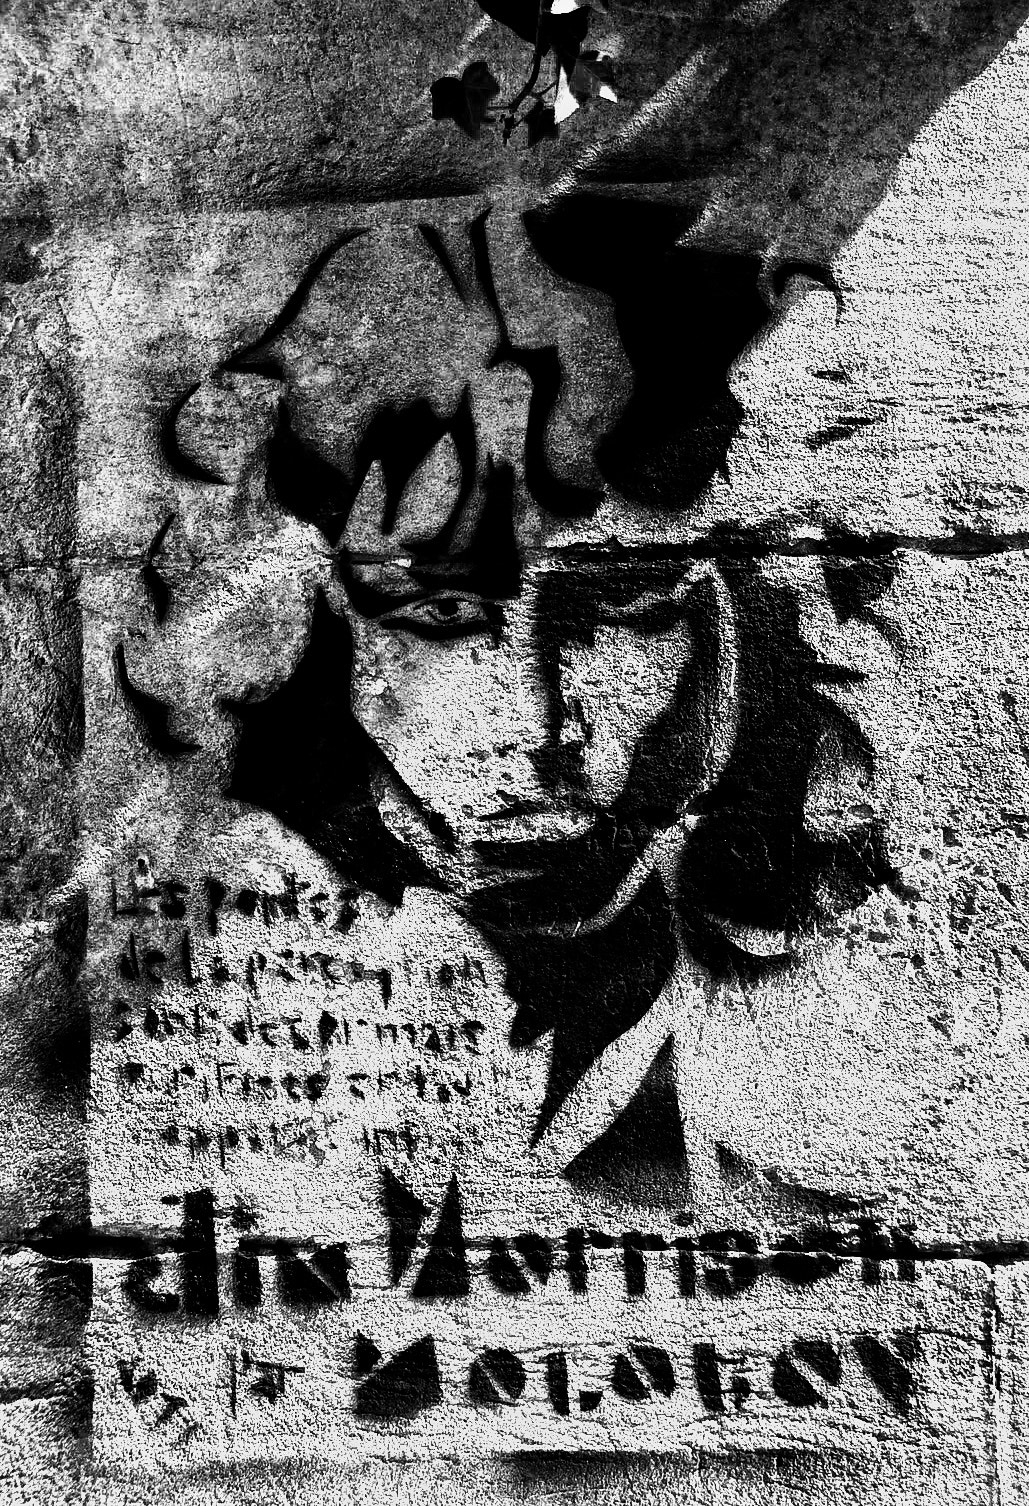 Sony DSC-T100 sample photo. Stencil art near jim morrison's grave, paris photography